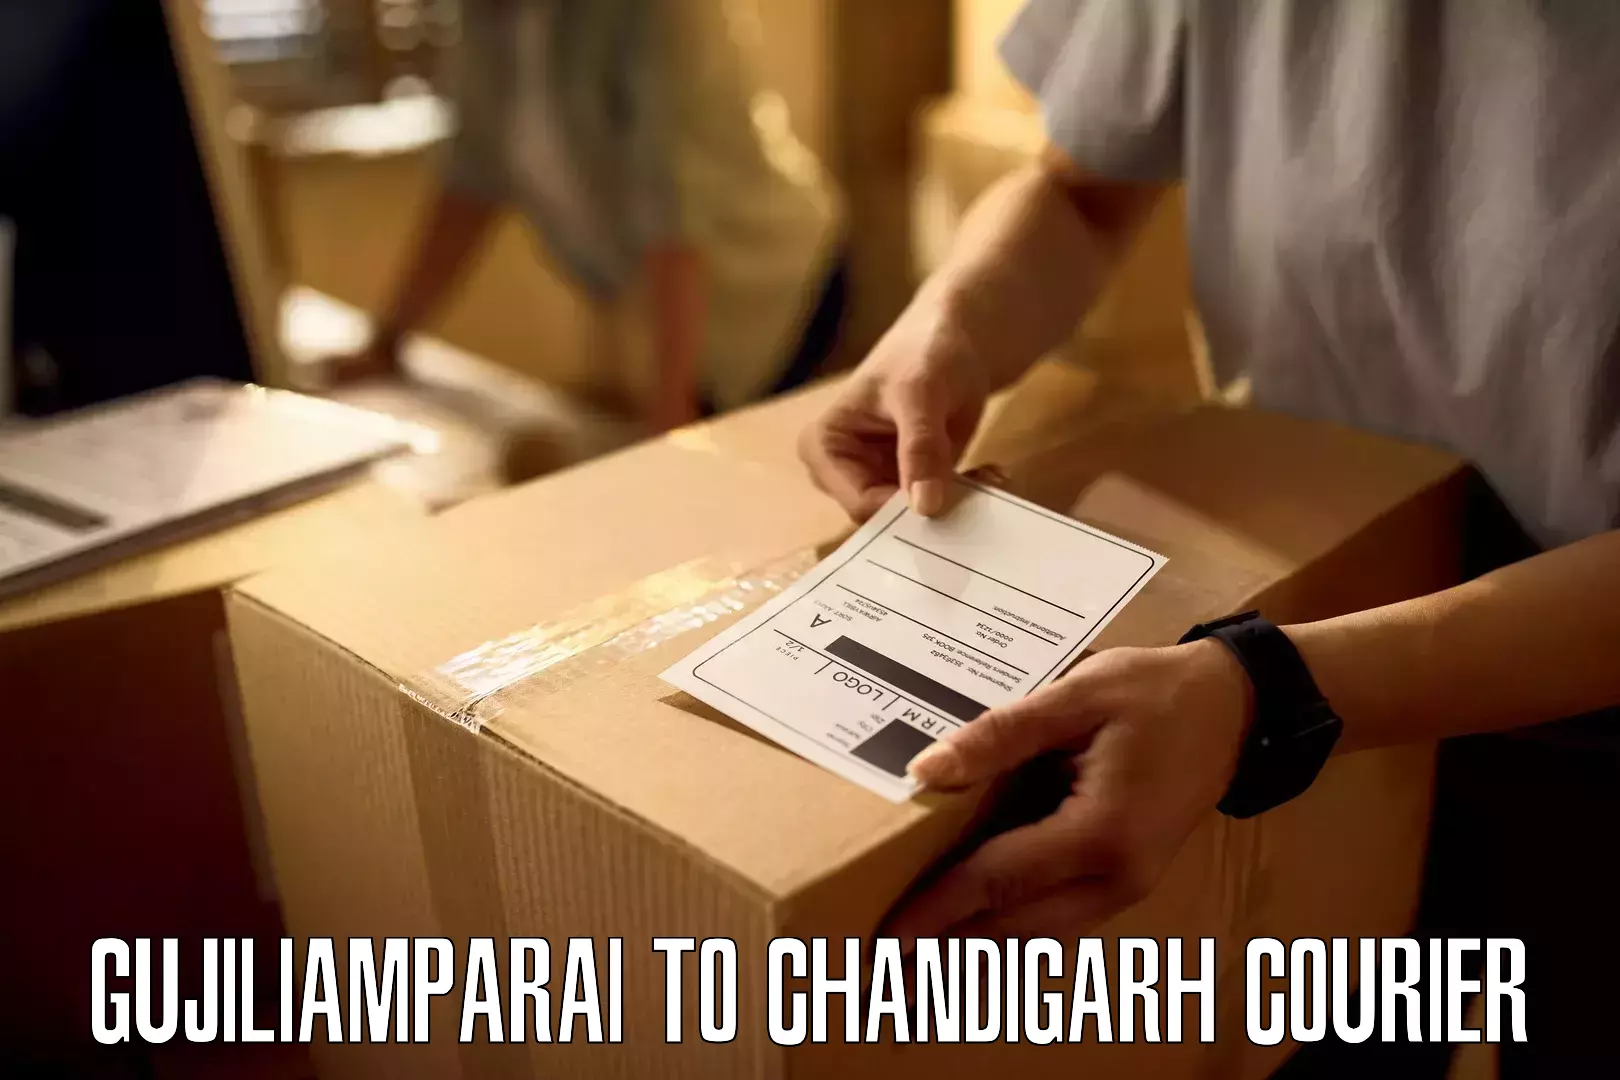 Courier service comparison Gujiliamparai to Chandigarh